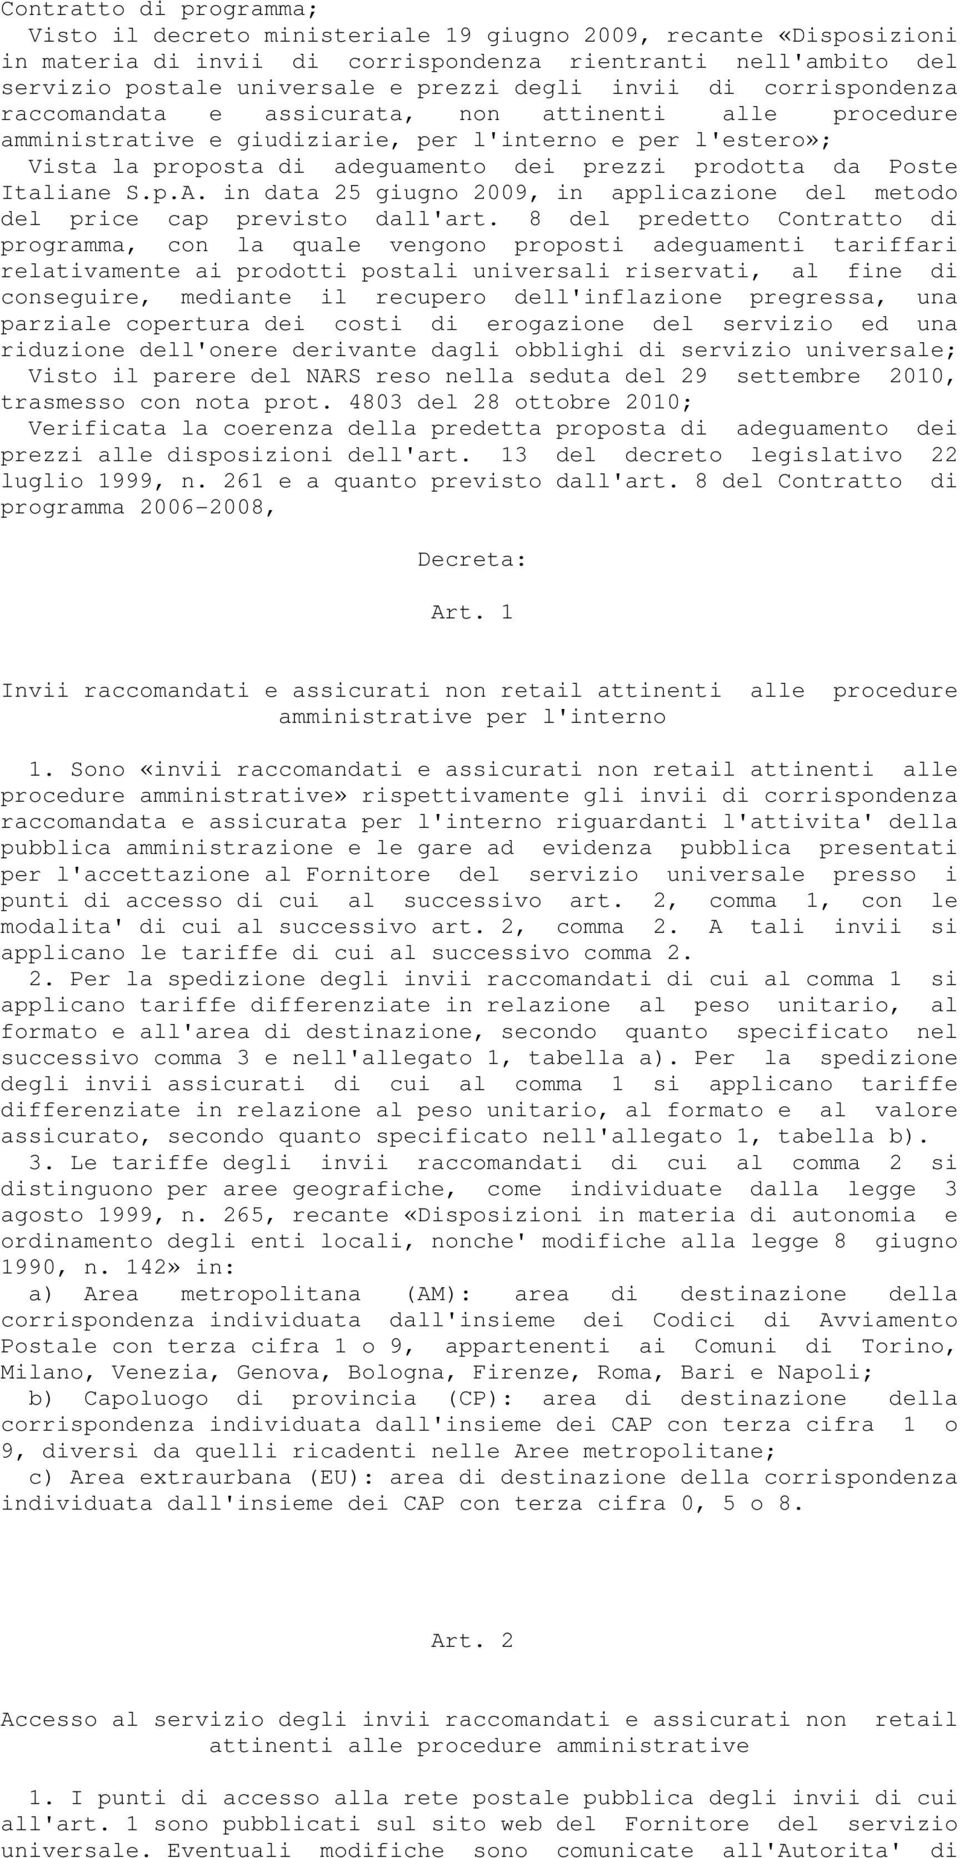 Poste Italiane S.p.A. in data 25 giugno 2009, in applicazione del metodo del price cap previsto dall'art.